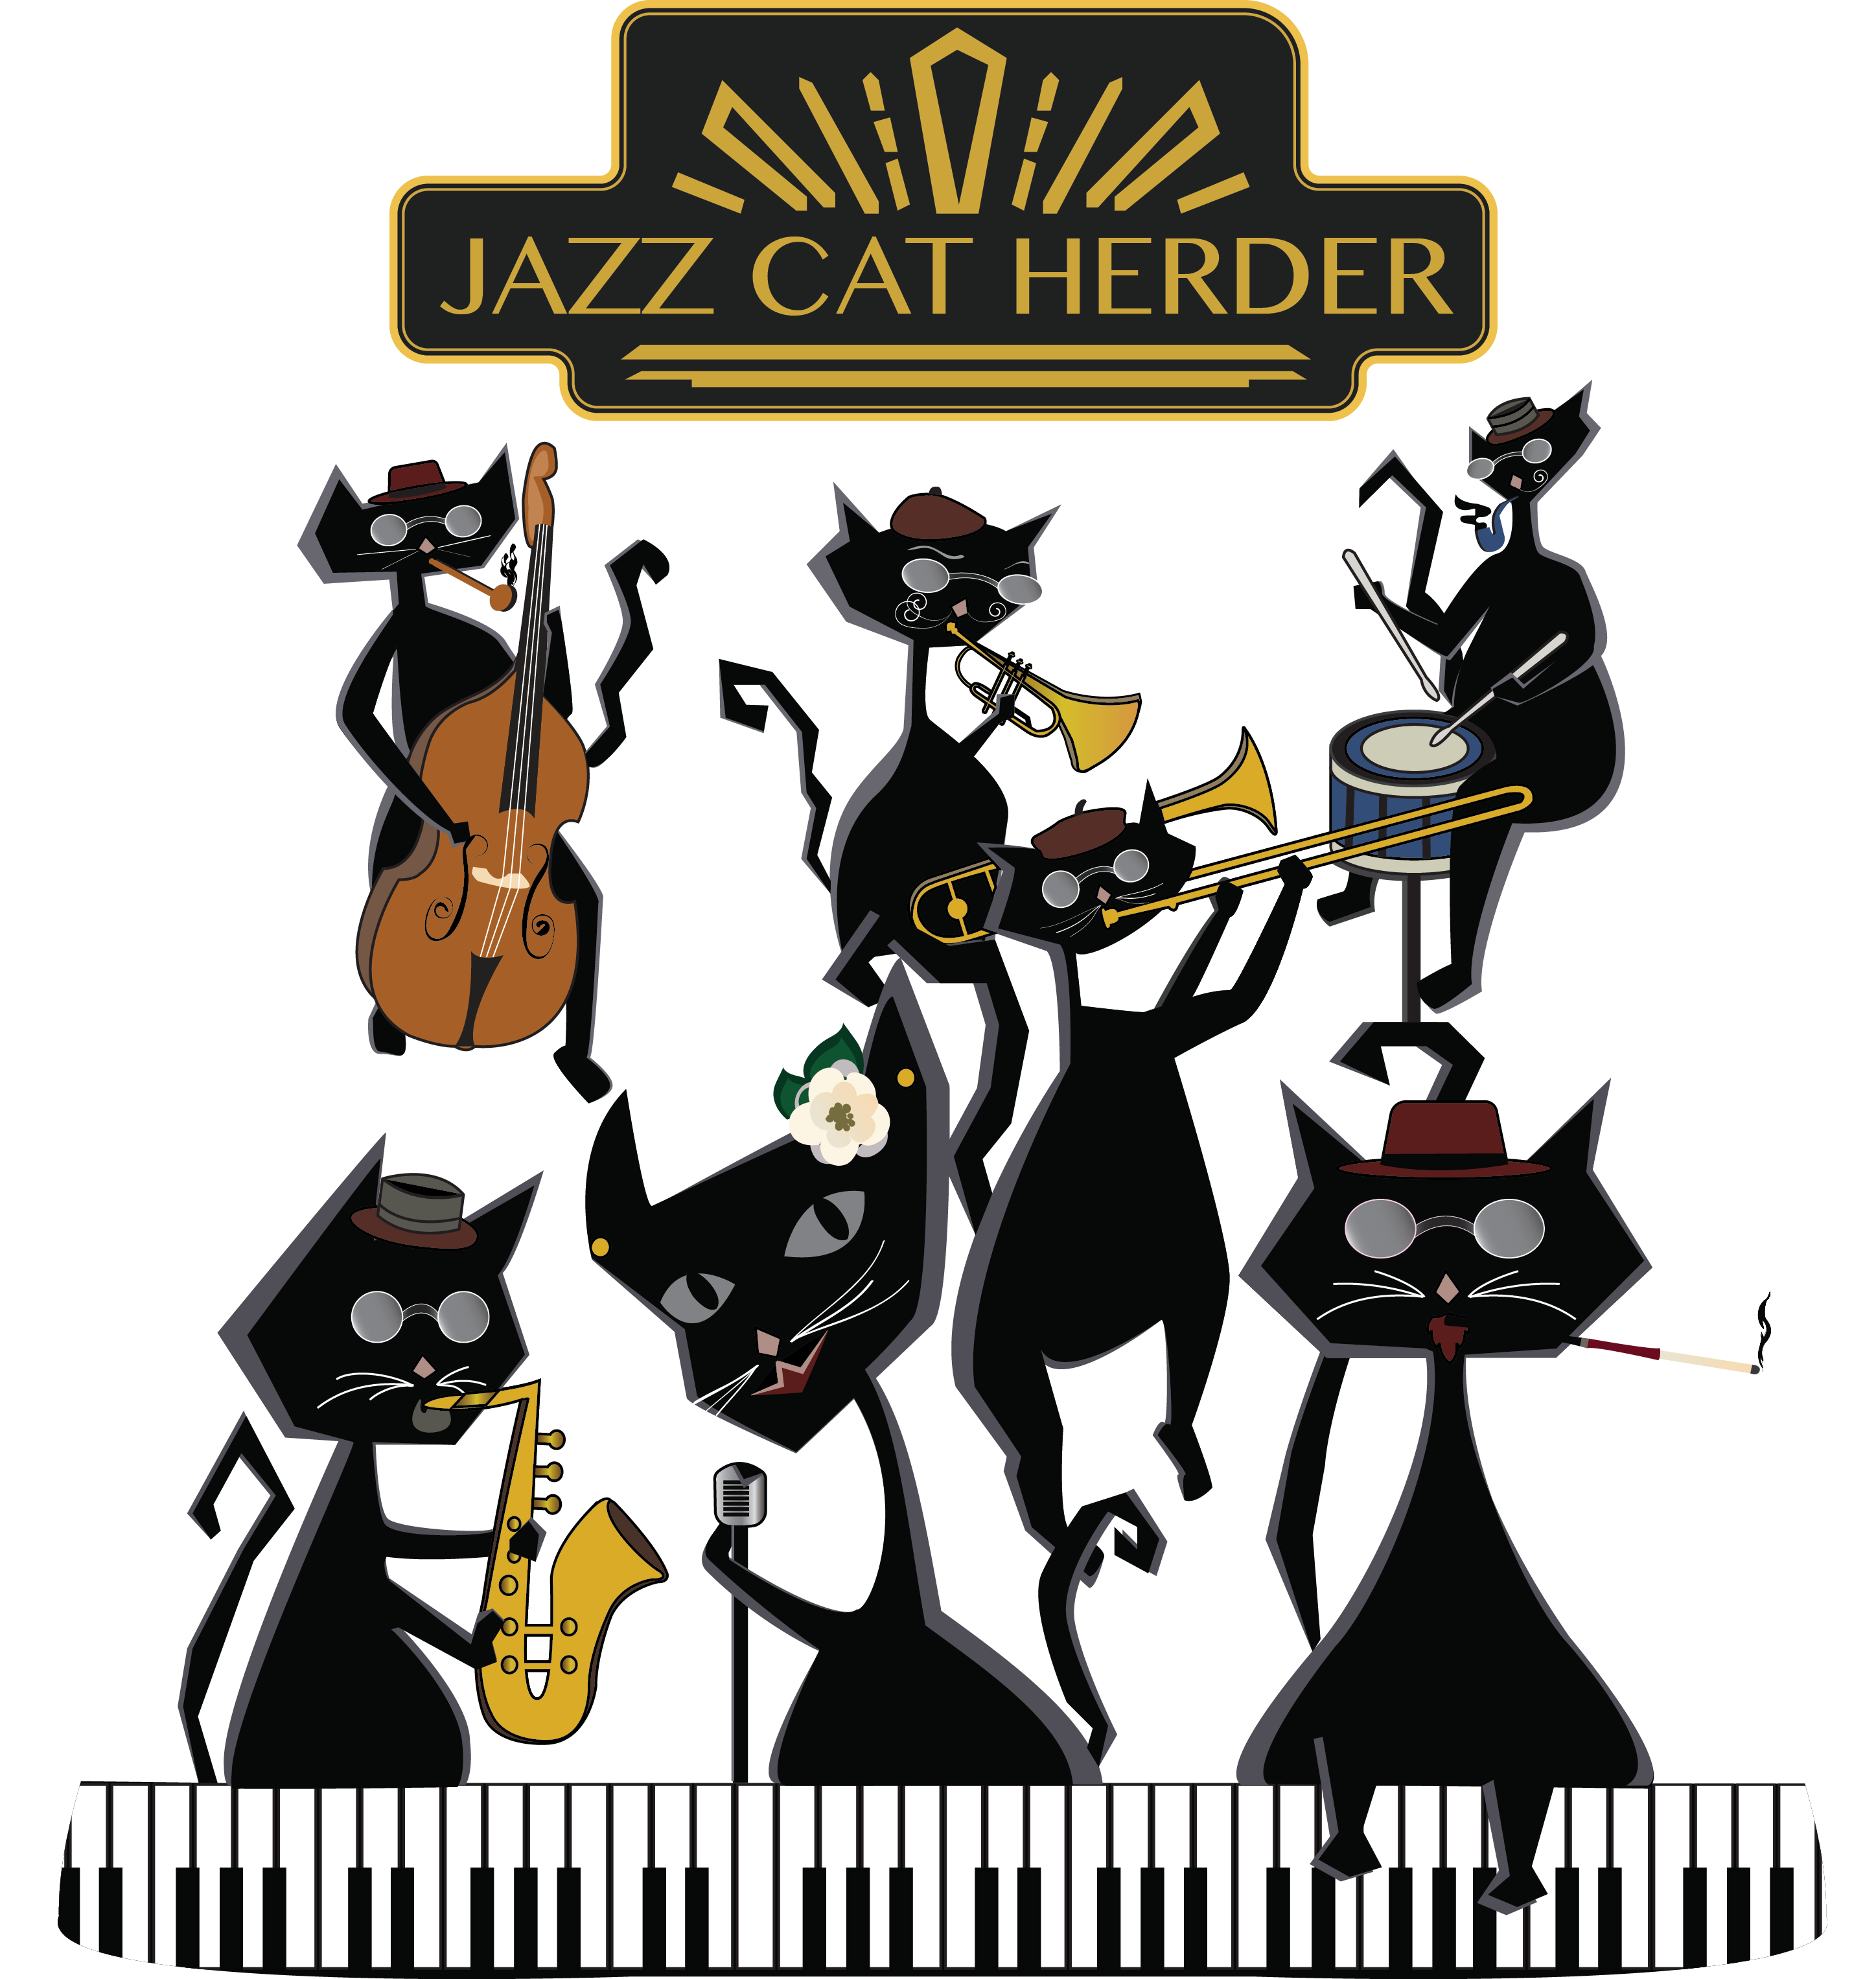 Jazz Cat Herder